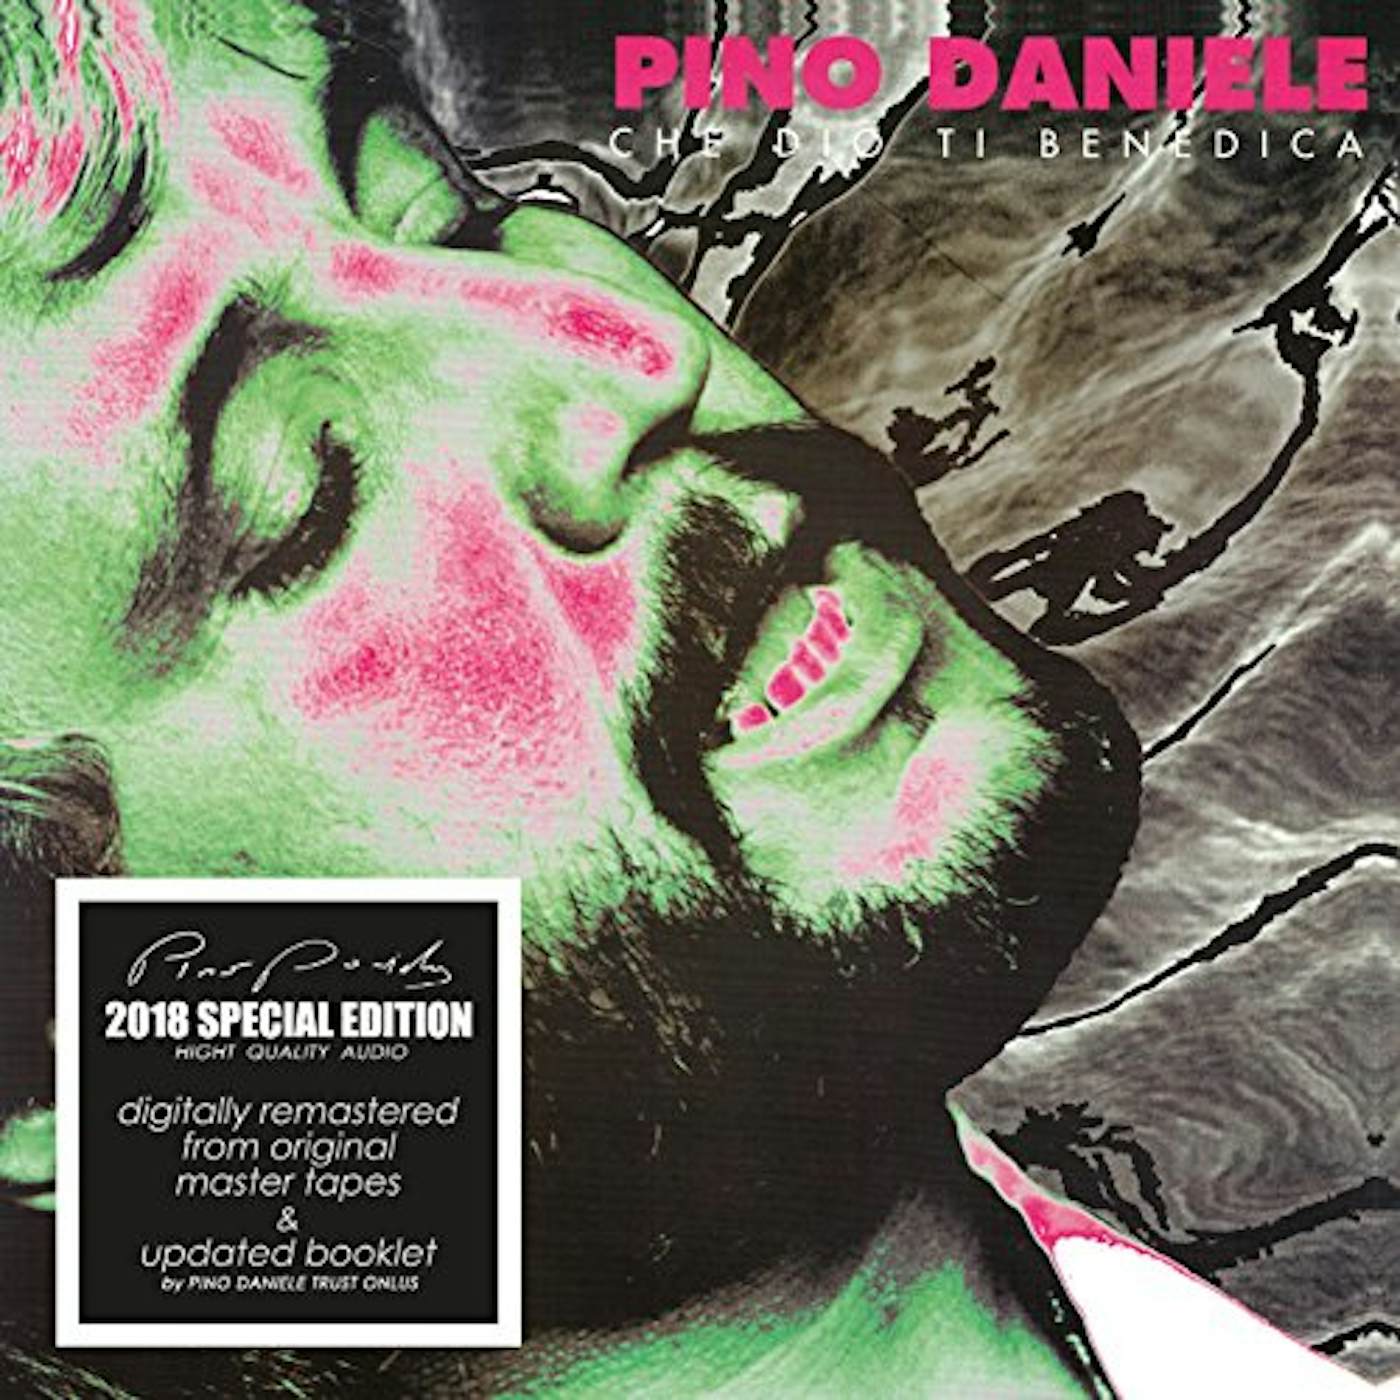 Pino Daniele CHE DIO TI BENEDICA CD